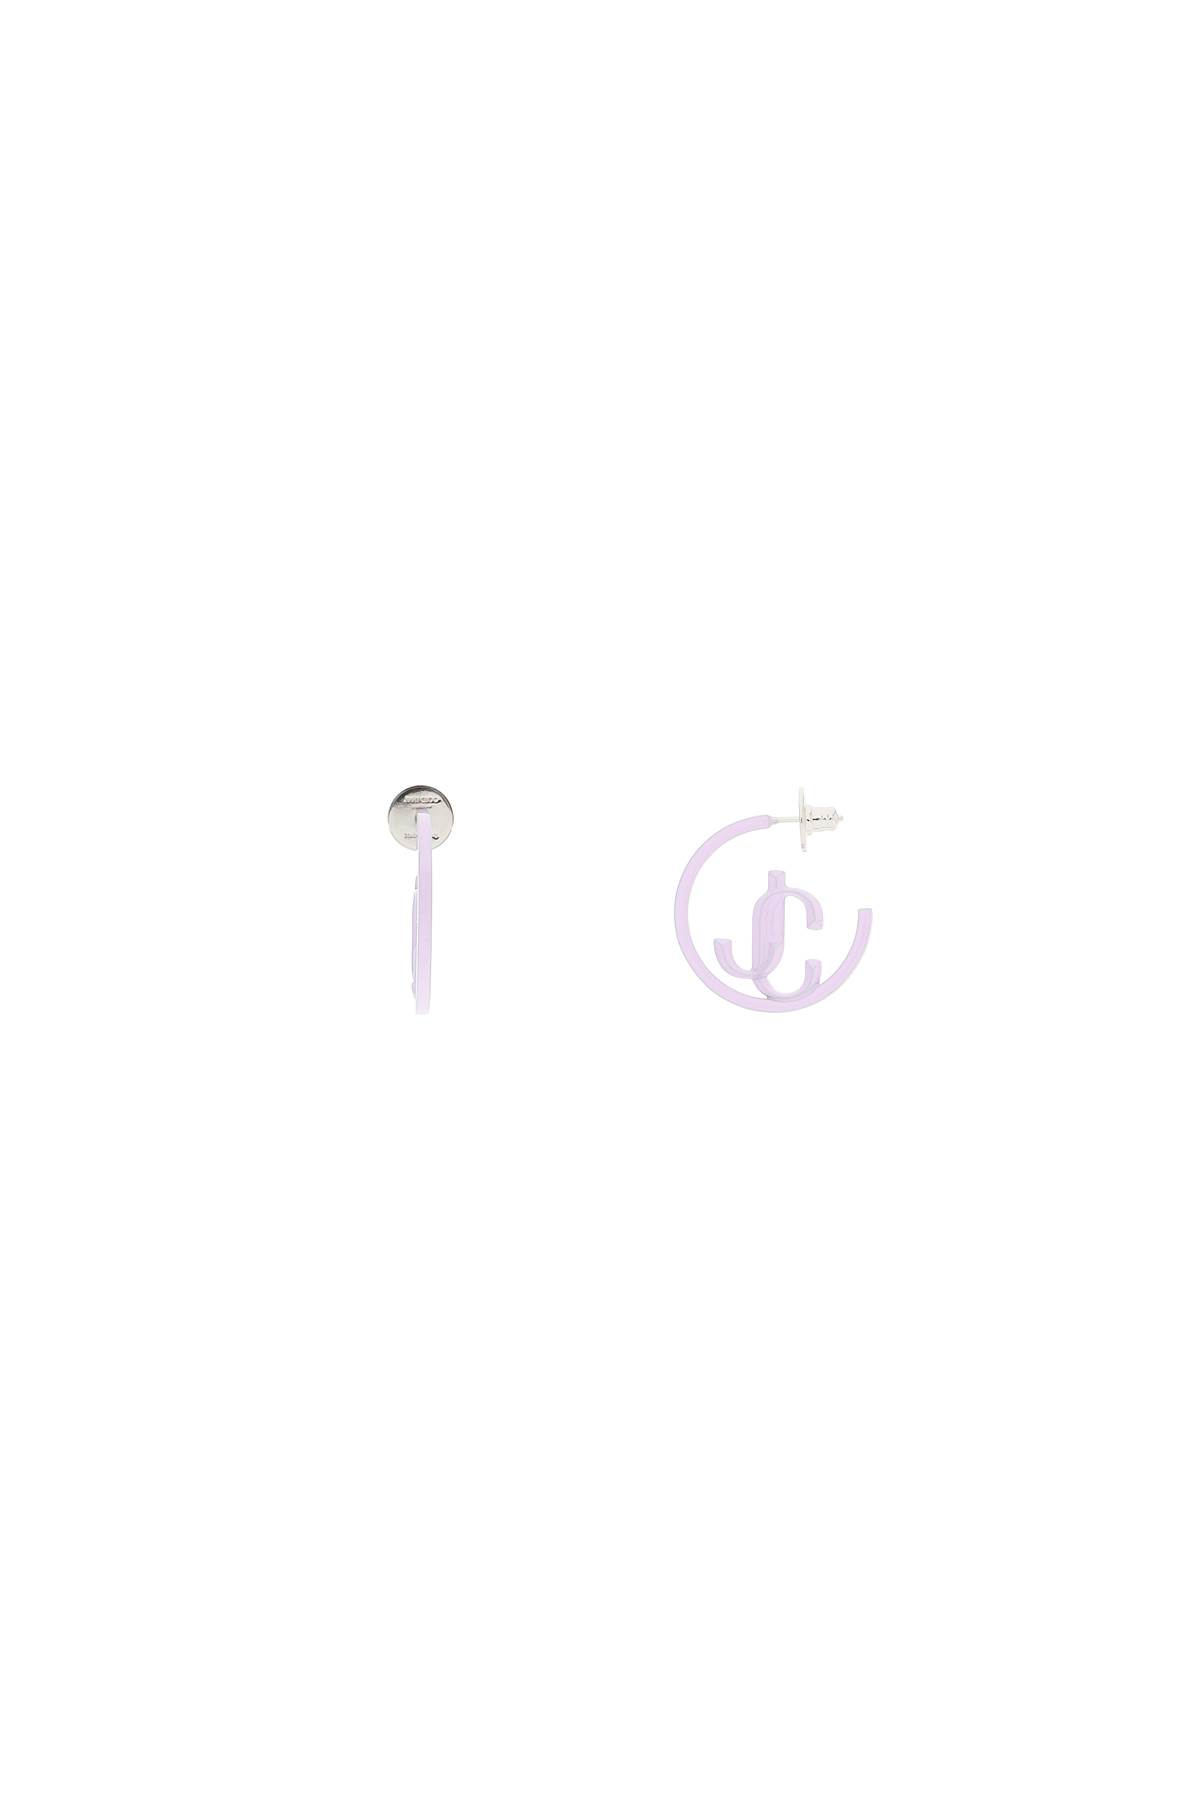 jc Monogram Hoops Earrings